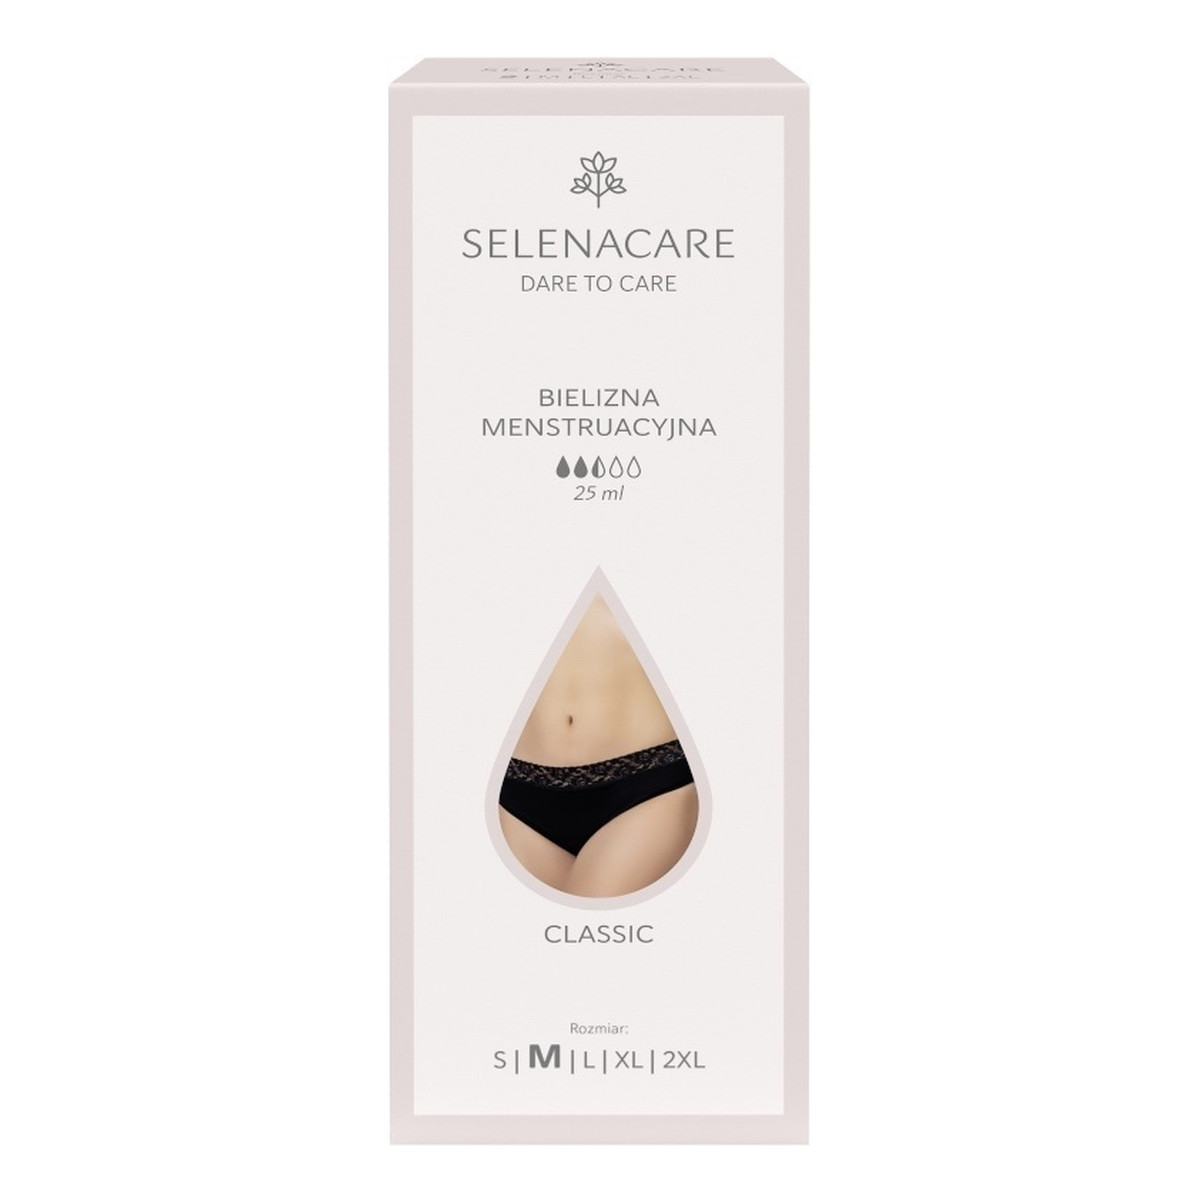 Selenacare Classic bielizna menstruacyjna czarna m 25ml